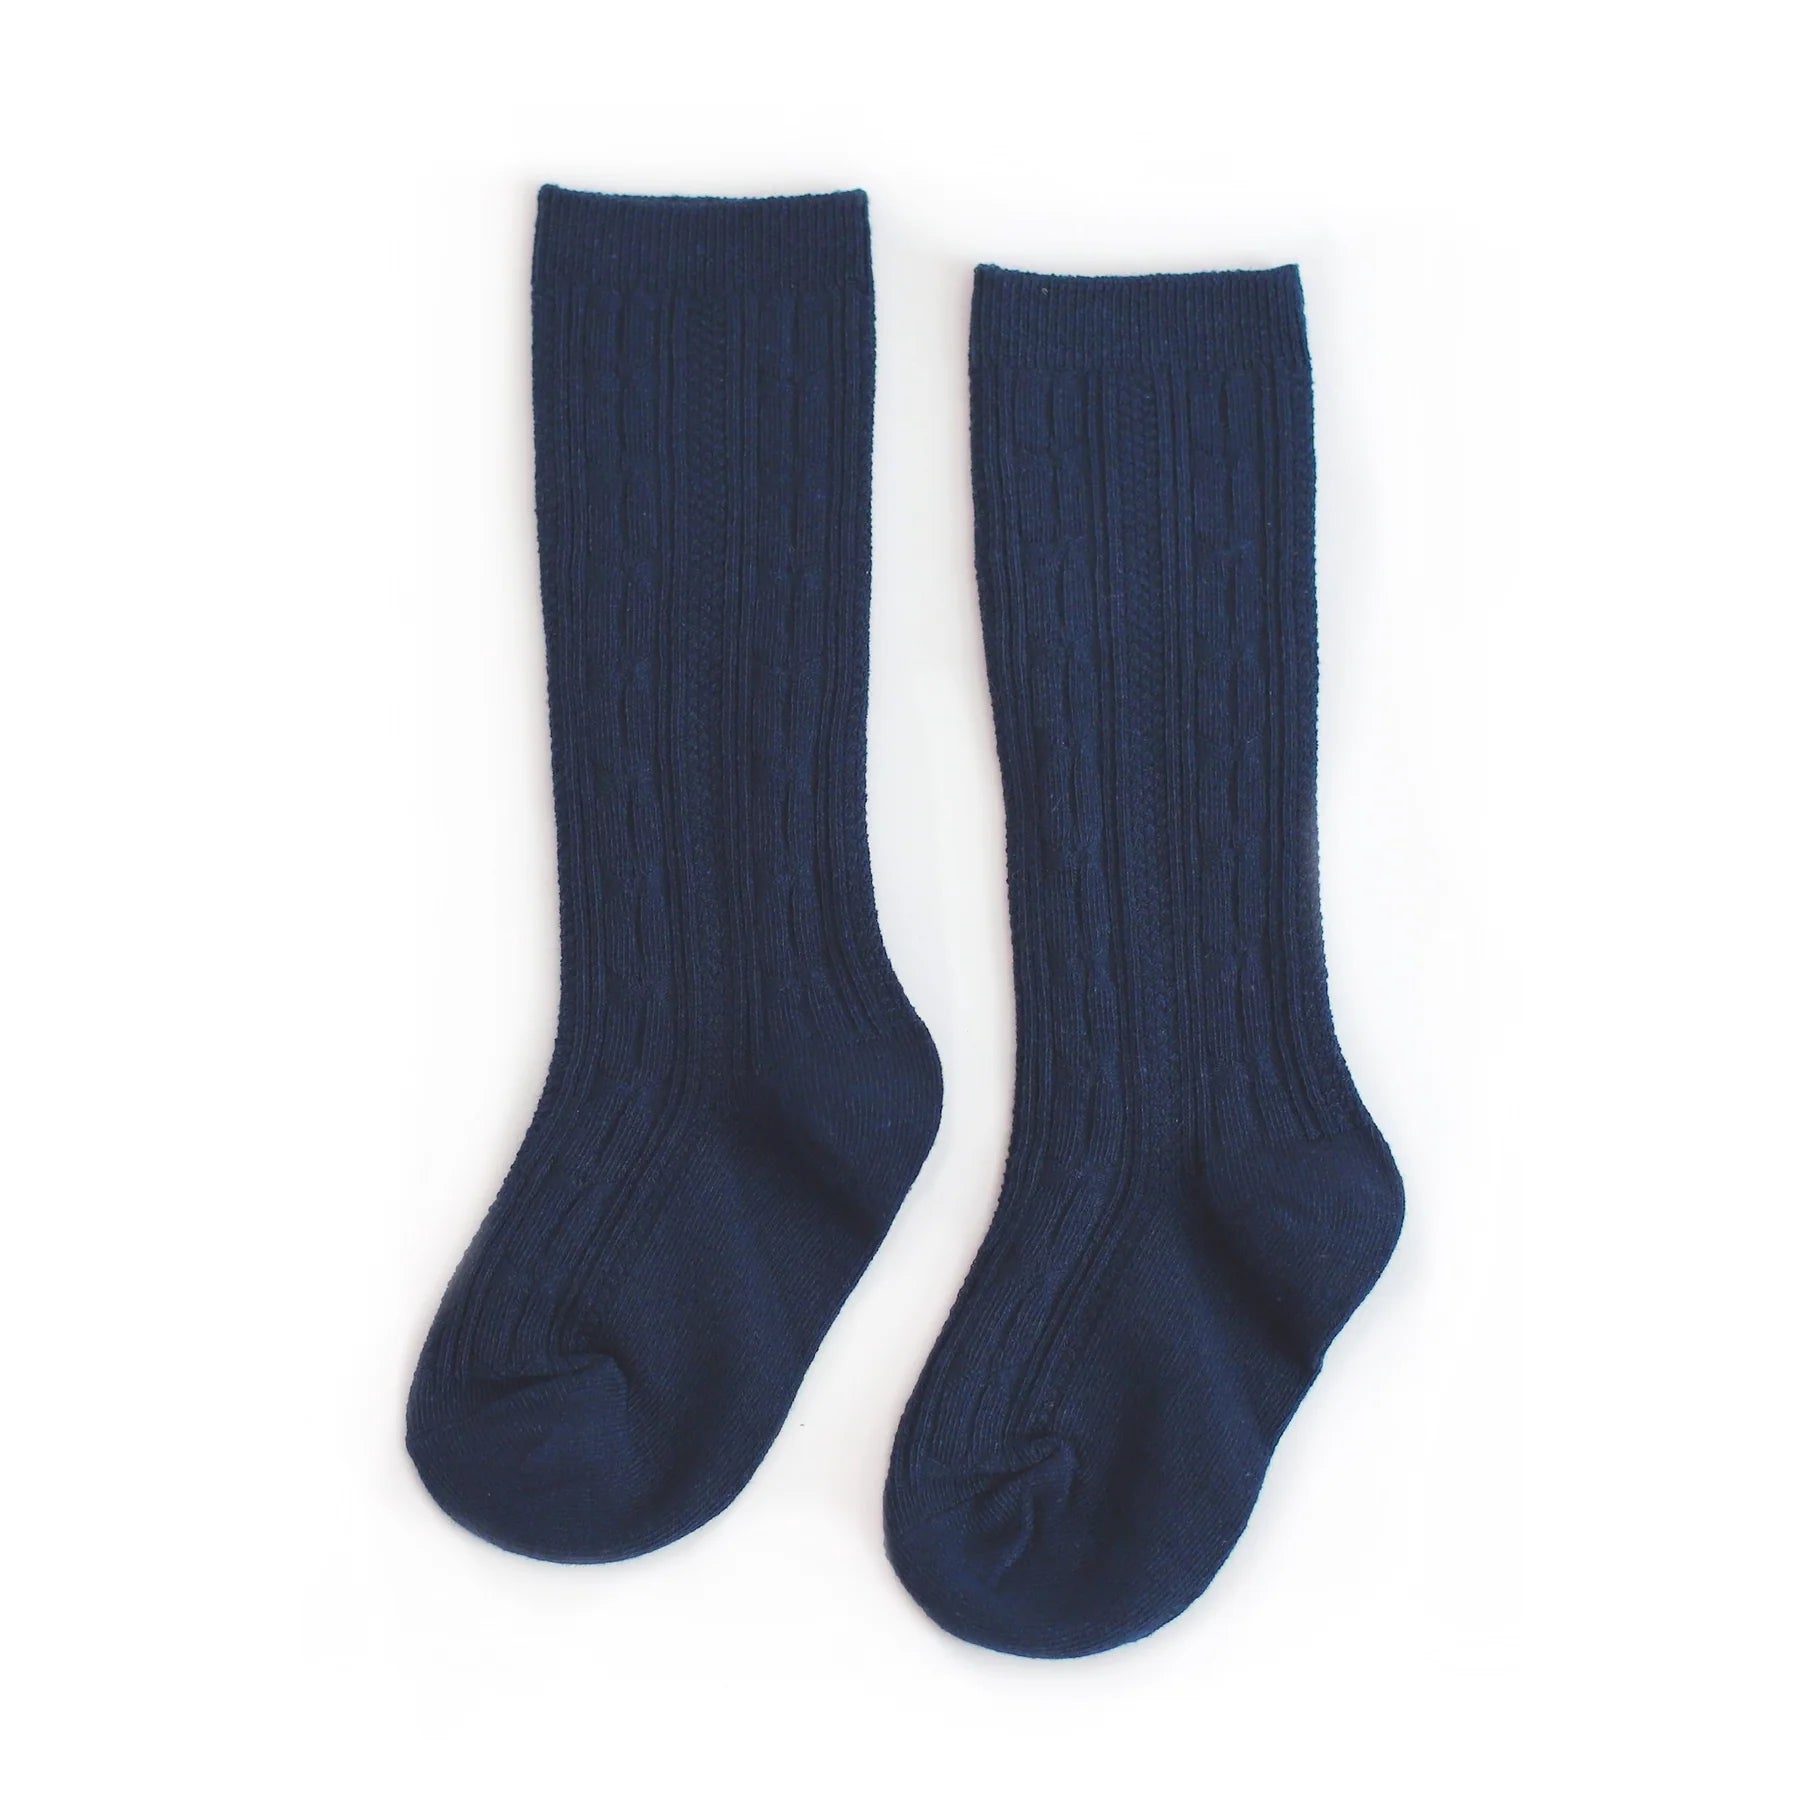 The Little Stocking Co - Knee High Socks - Navy Blue